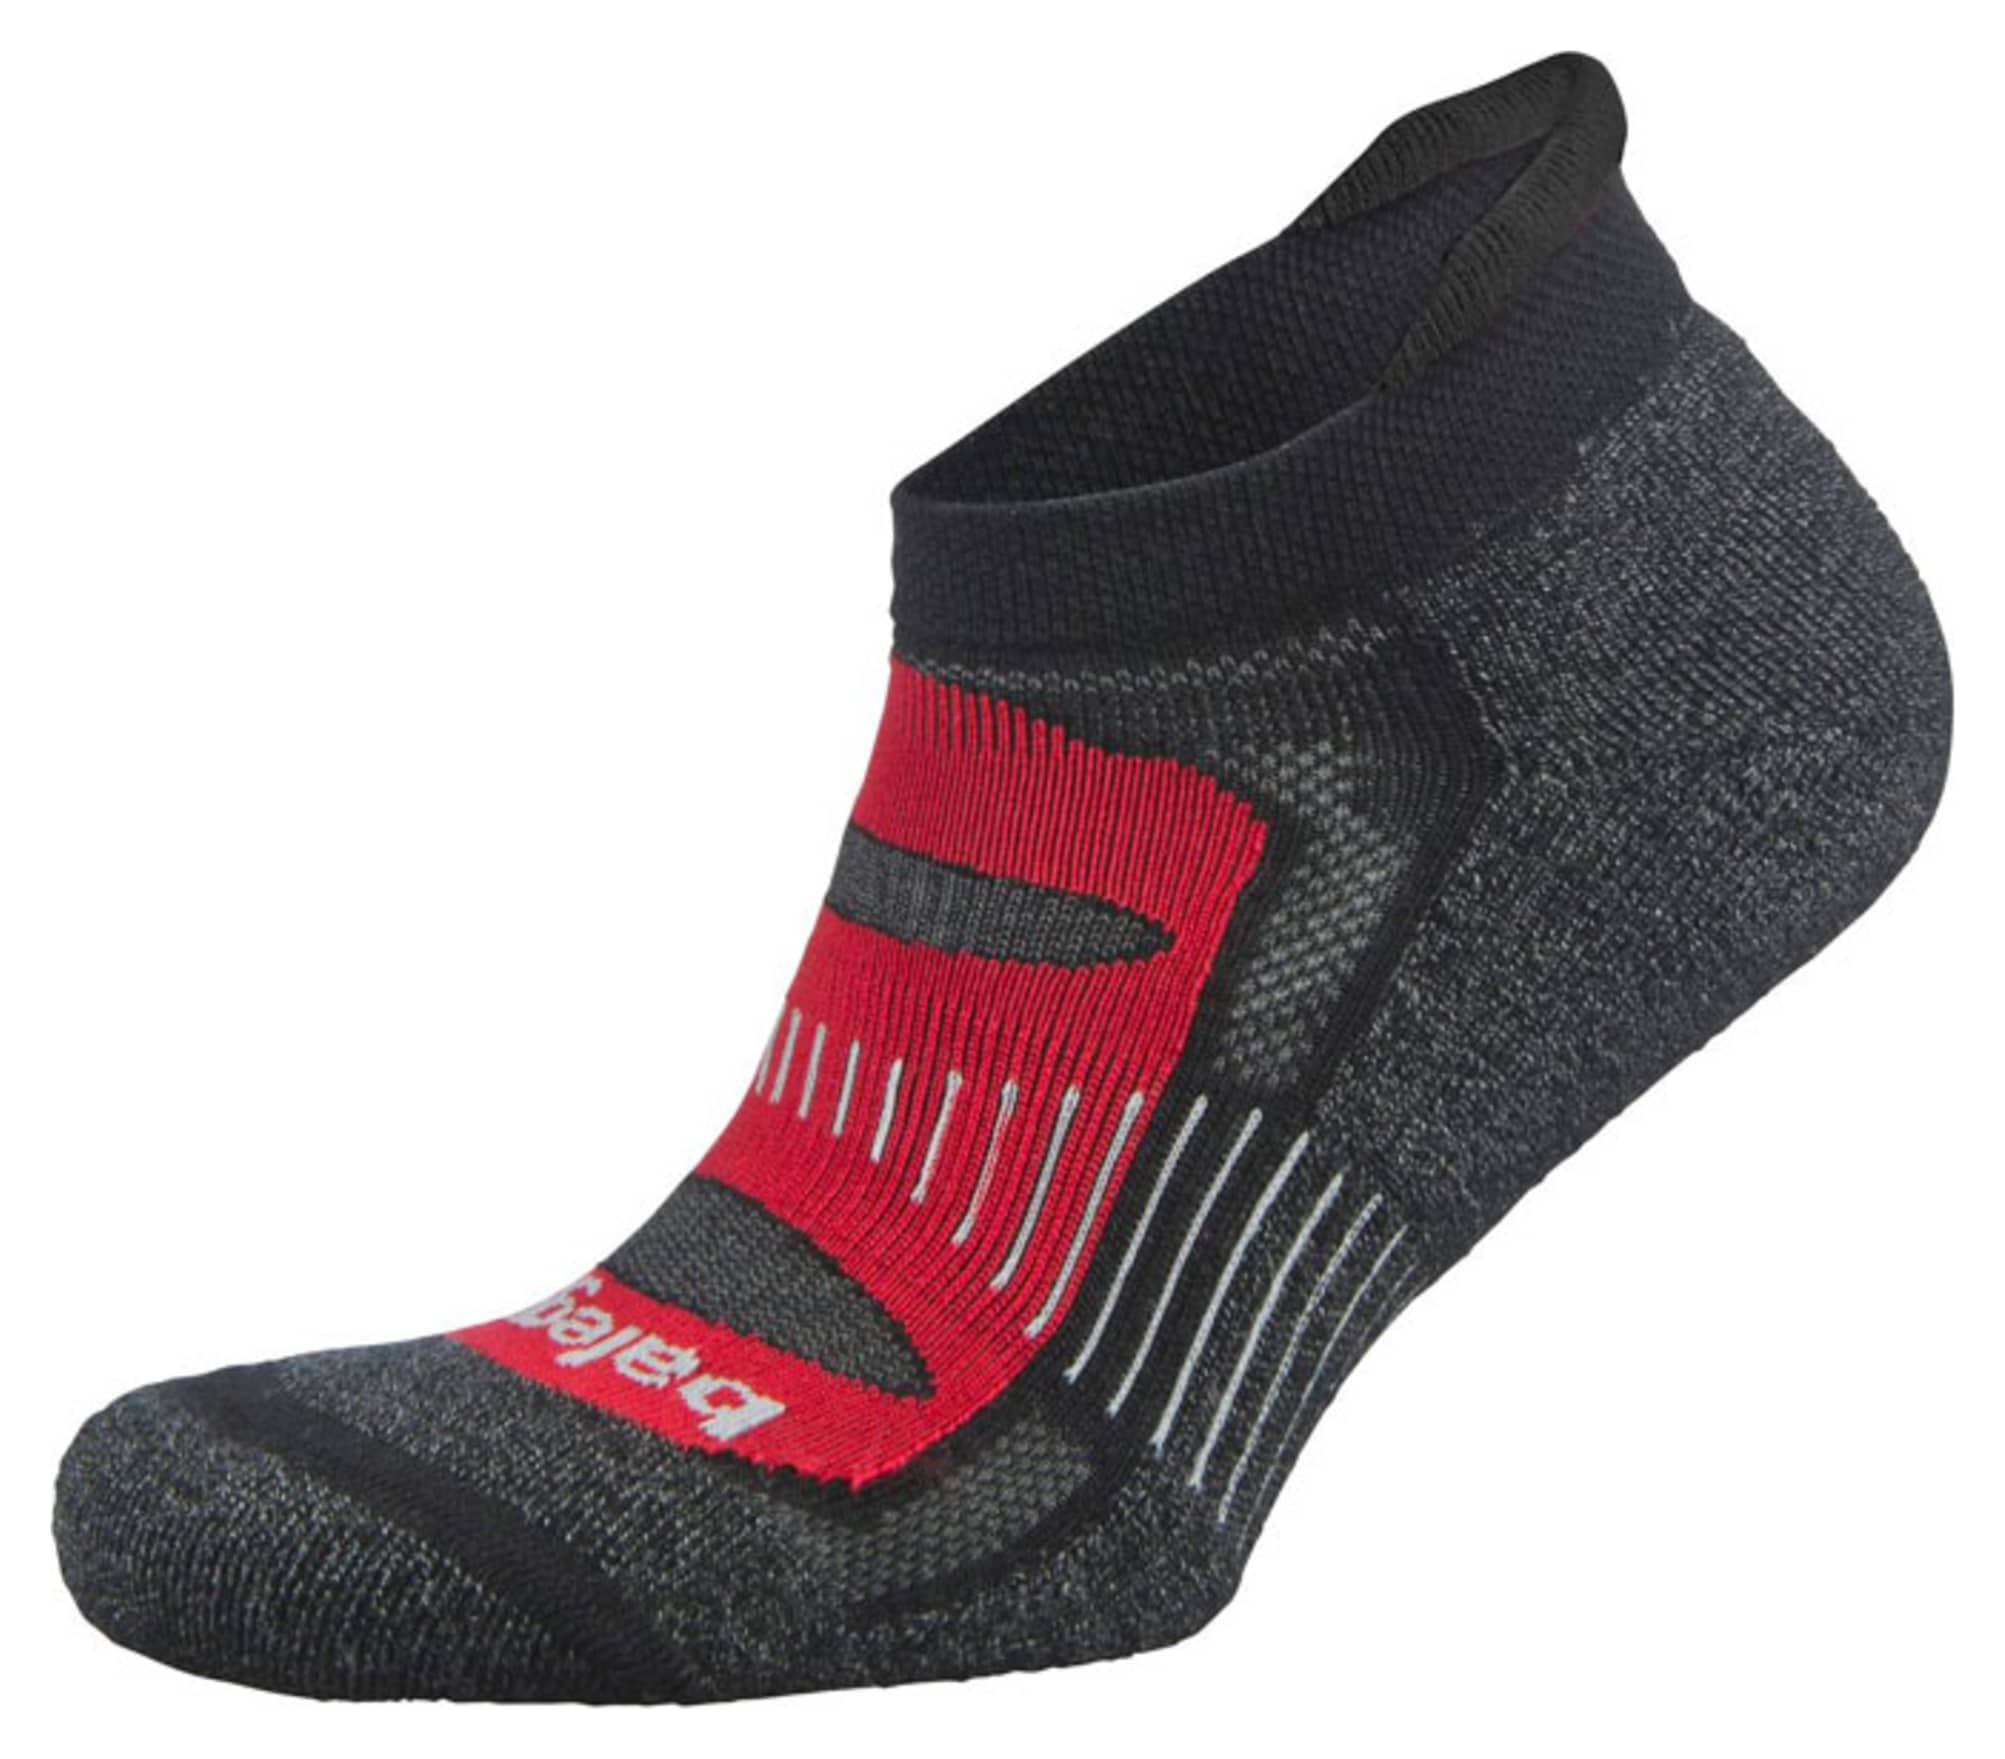 Balega Blister Resist Socks Red/Black - Small